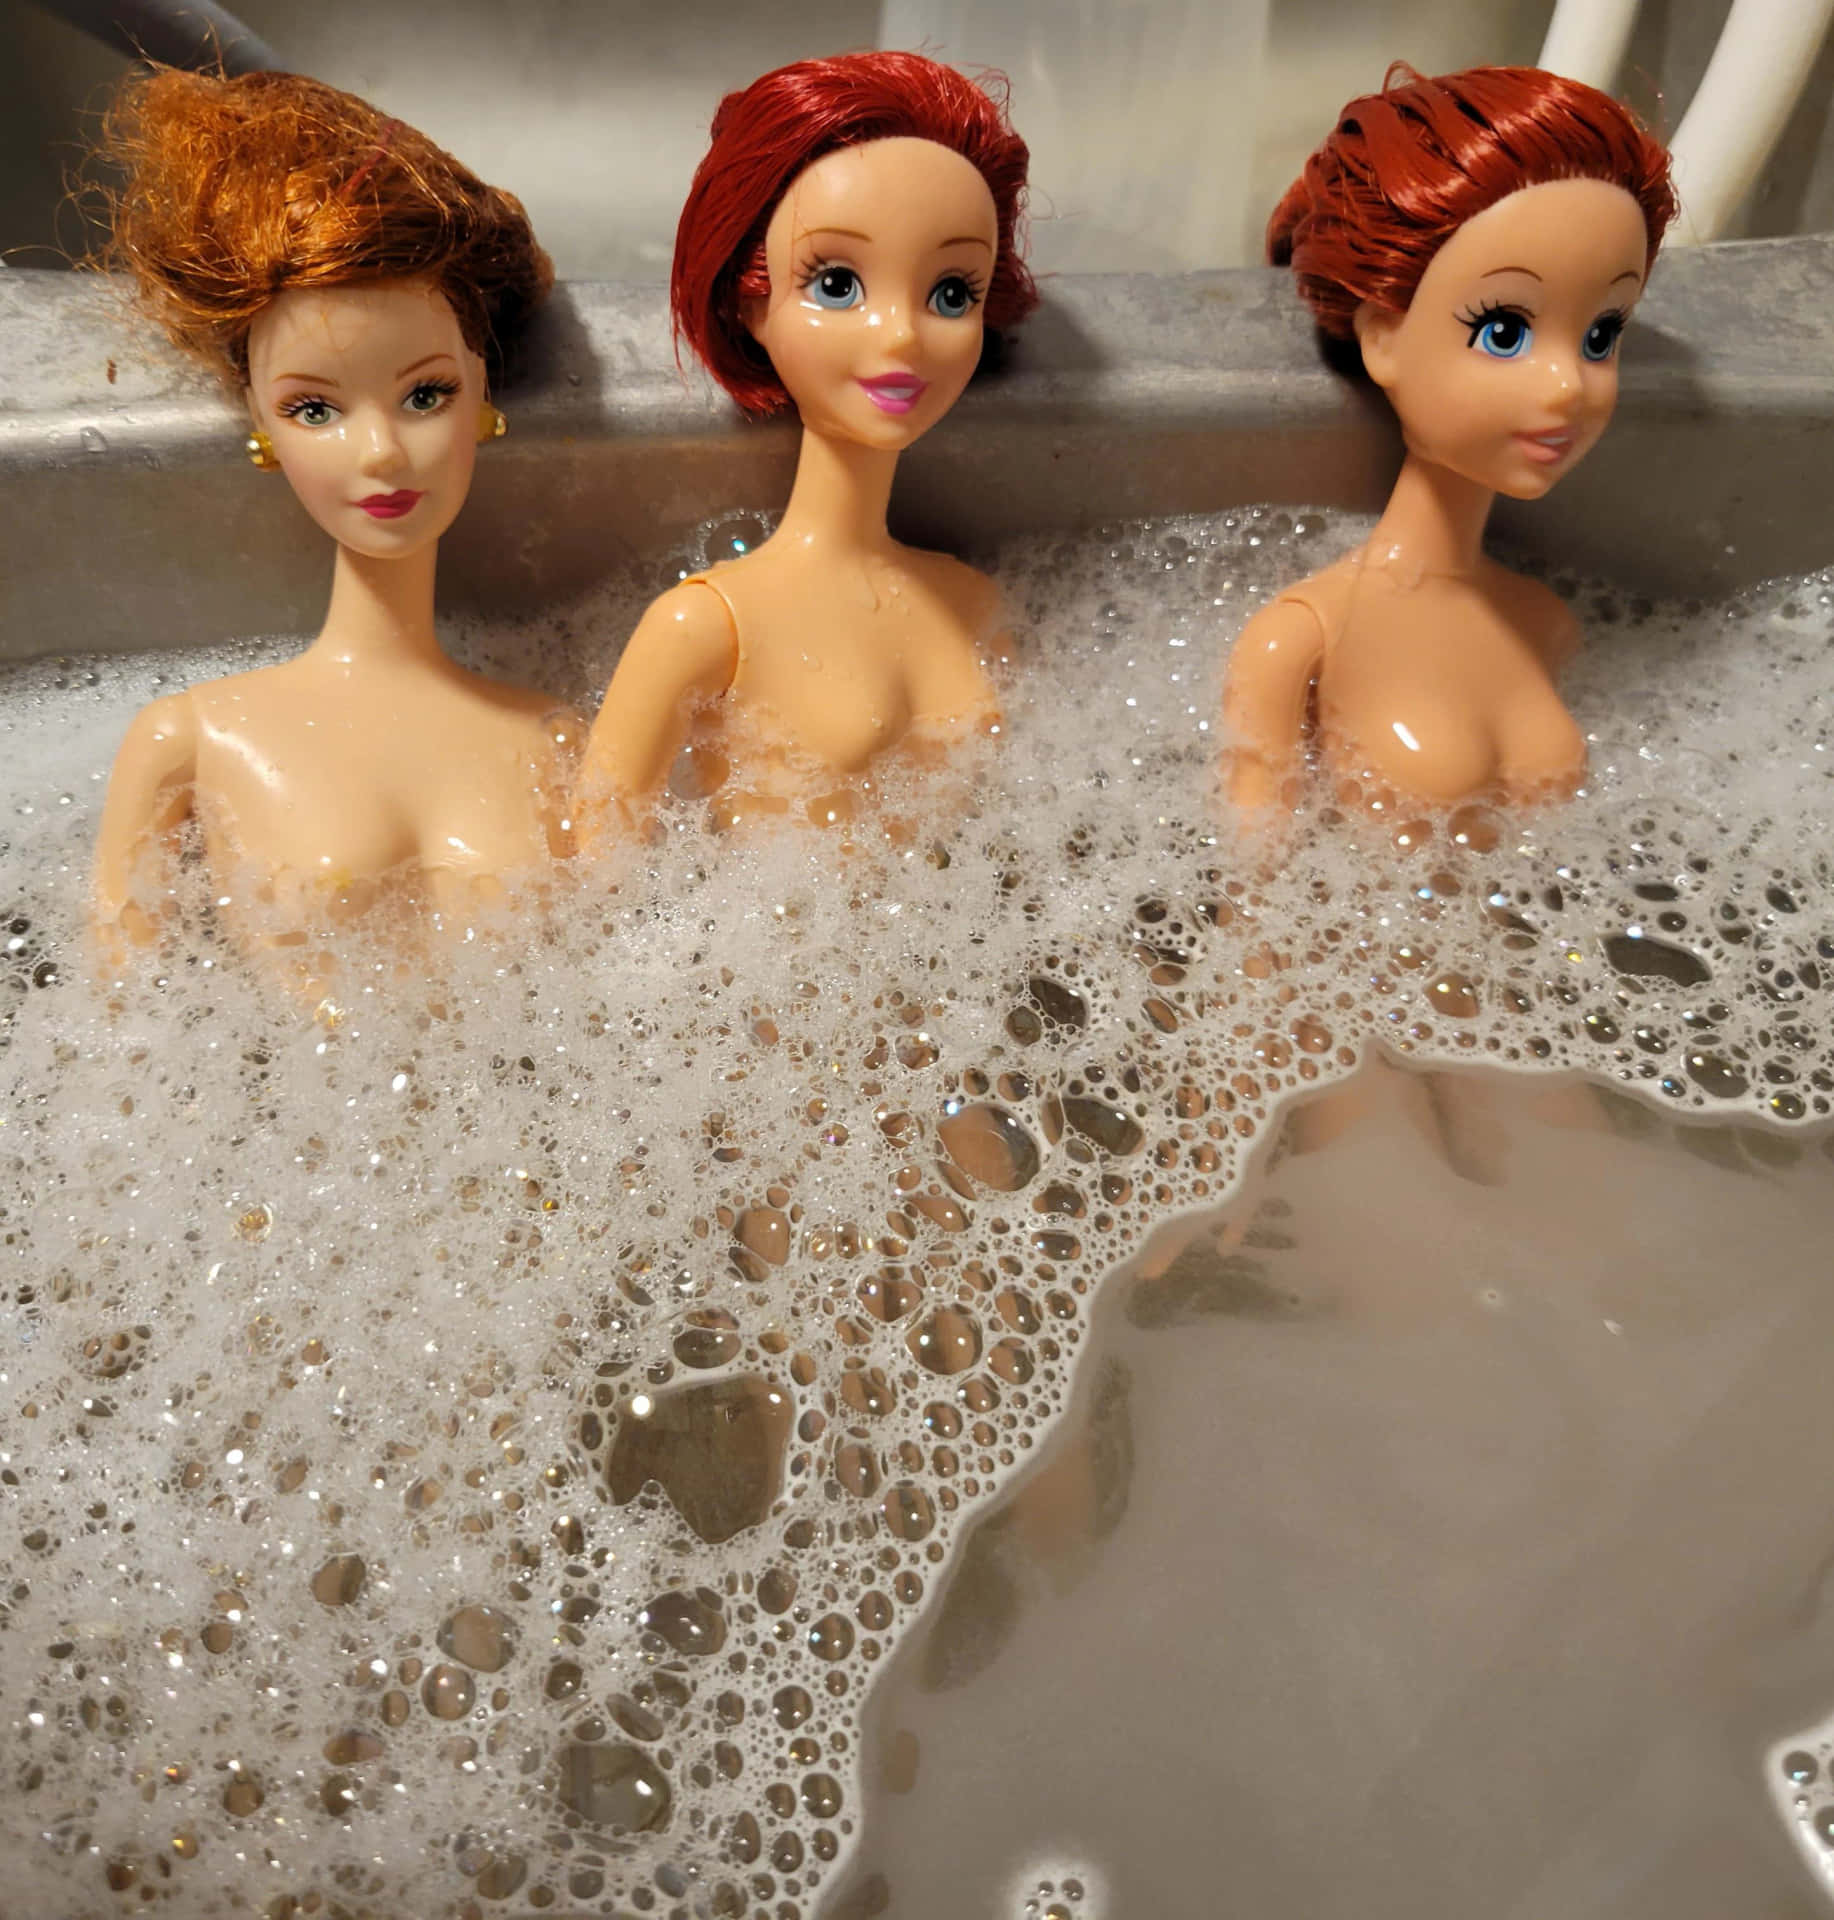 Imagendivertida De Barbie Y Sus Amigas En Una Bañera